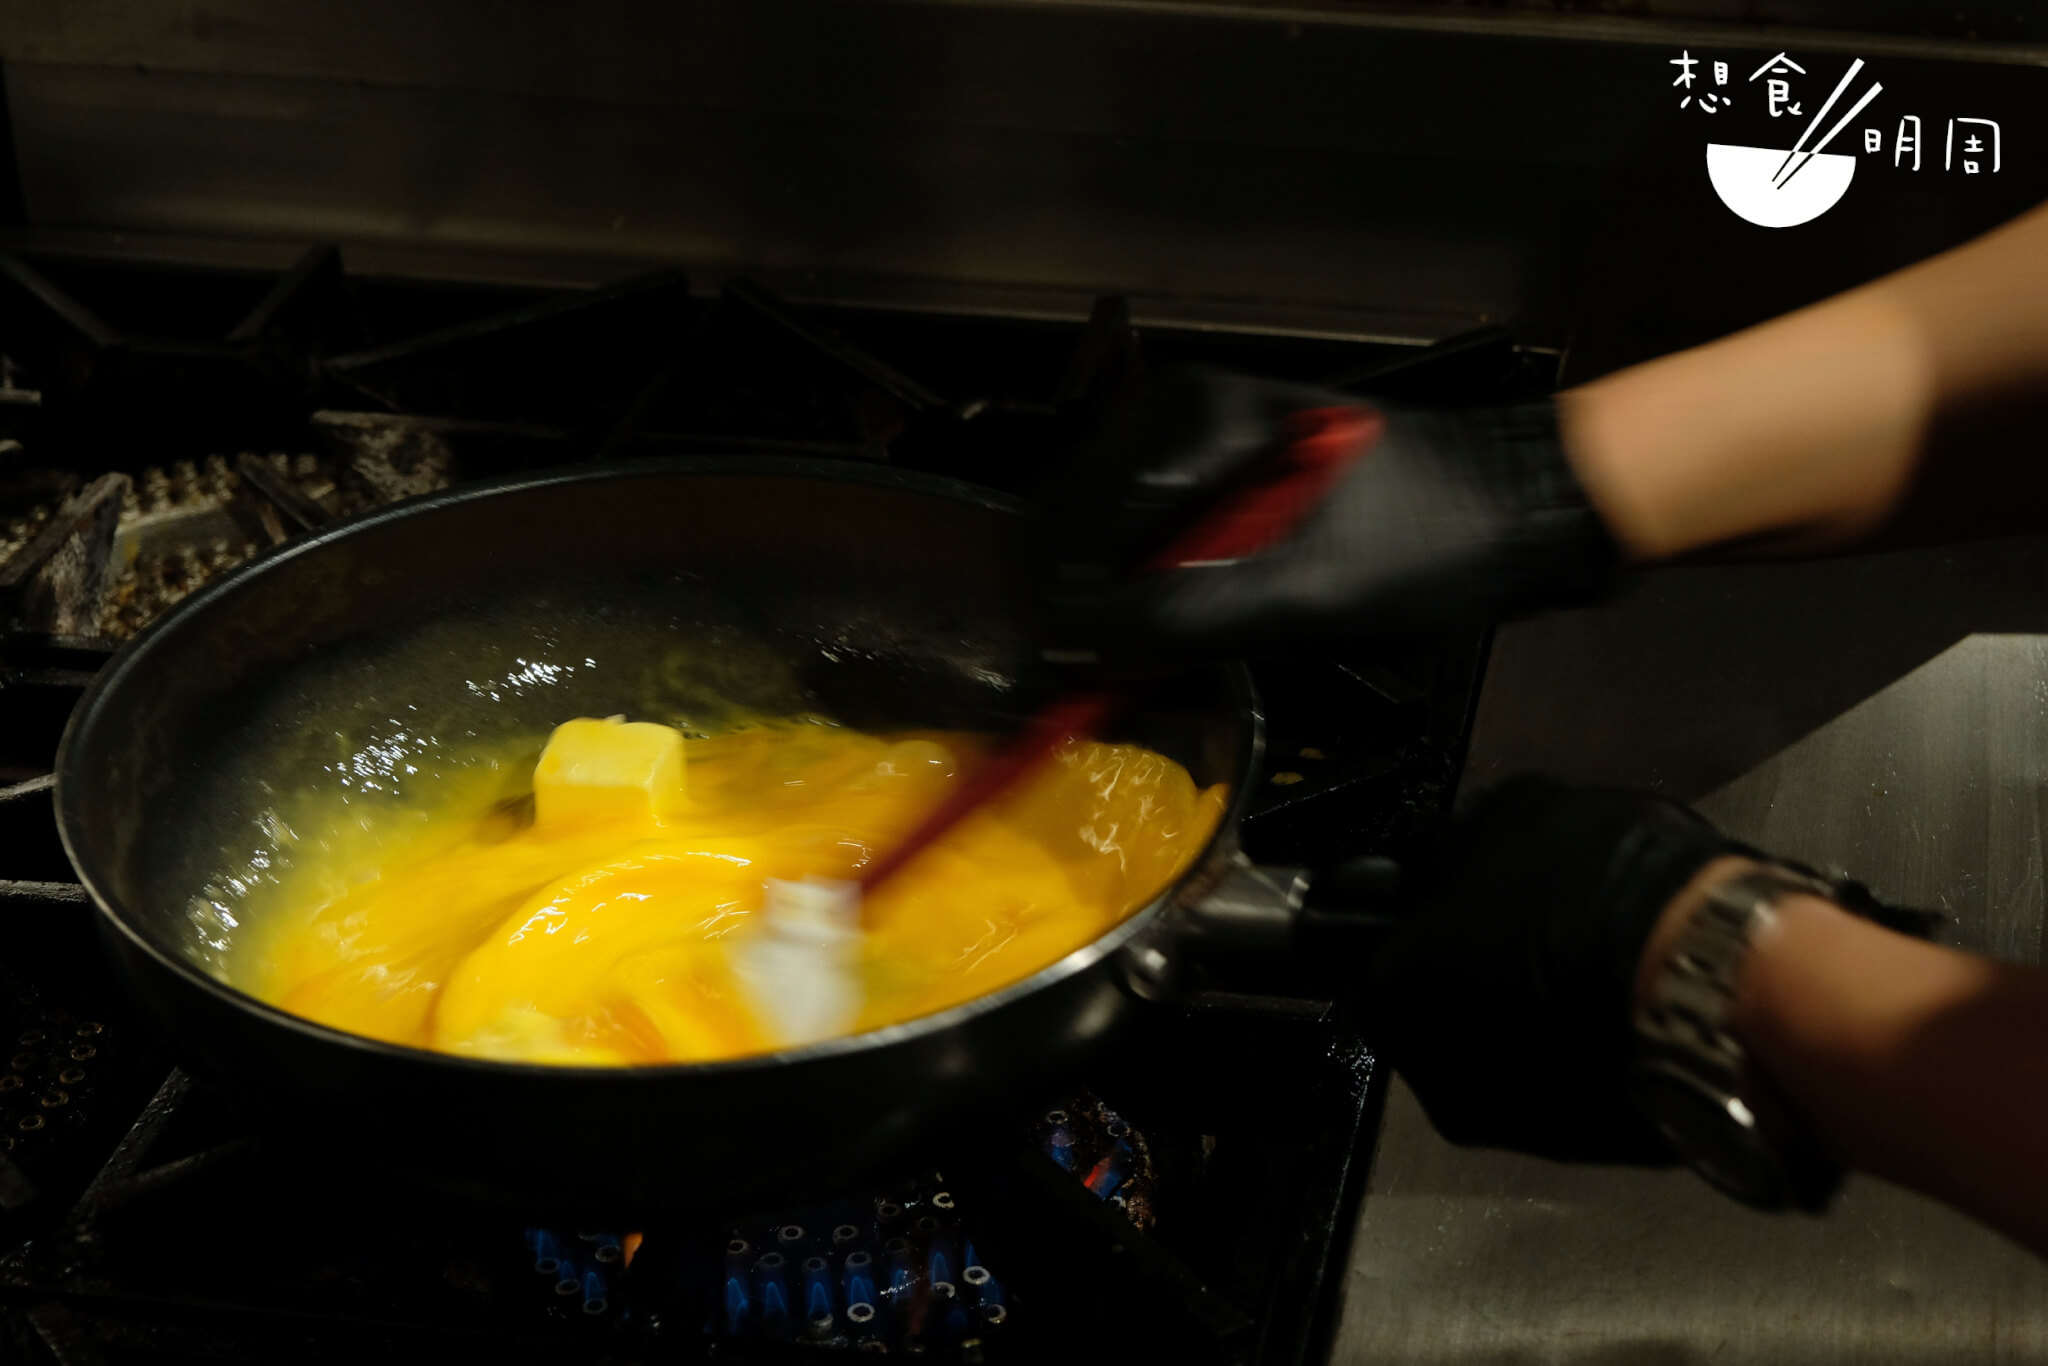 走進廚房拍攝時，總能偷到一招半式。攪拌就能夠做出頂極的滑嫩口感。負責烹調炒蛋的廚師手堪比電競職業選手，他笑稱香港人生活節奏快，所以自己「蕩」蛋的都跟上香港人的步伐。